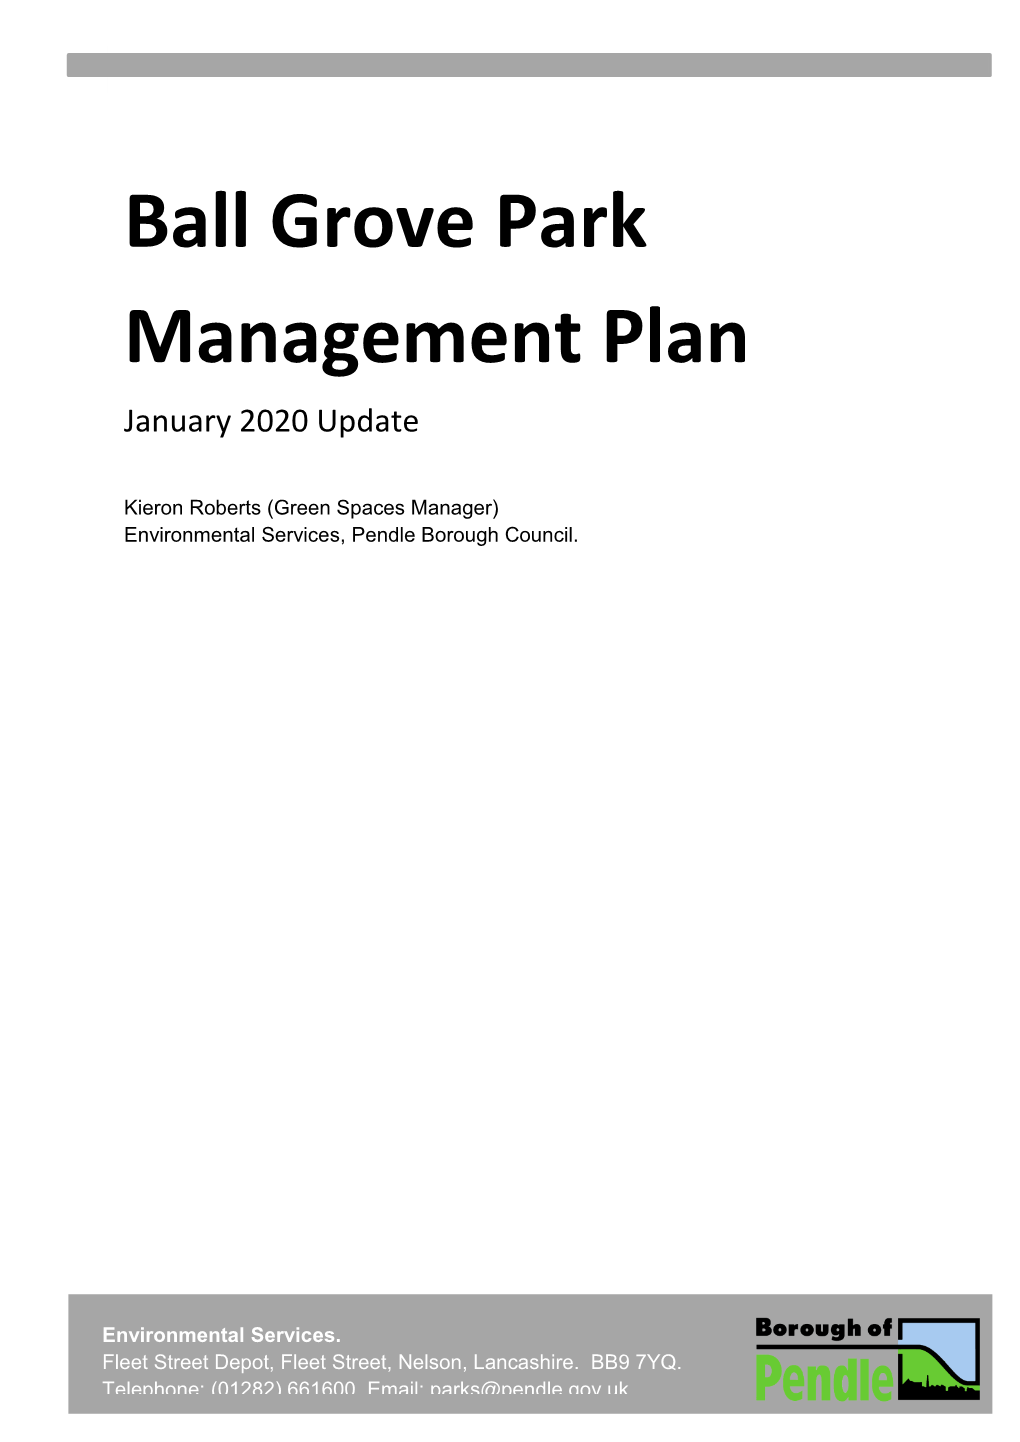 Ball Grove Park Management Plan January 2020 Update